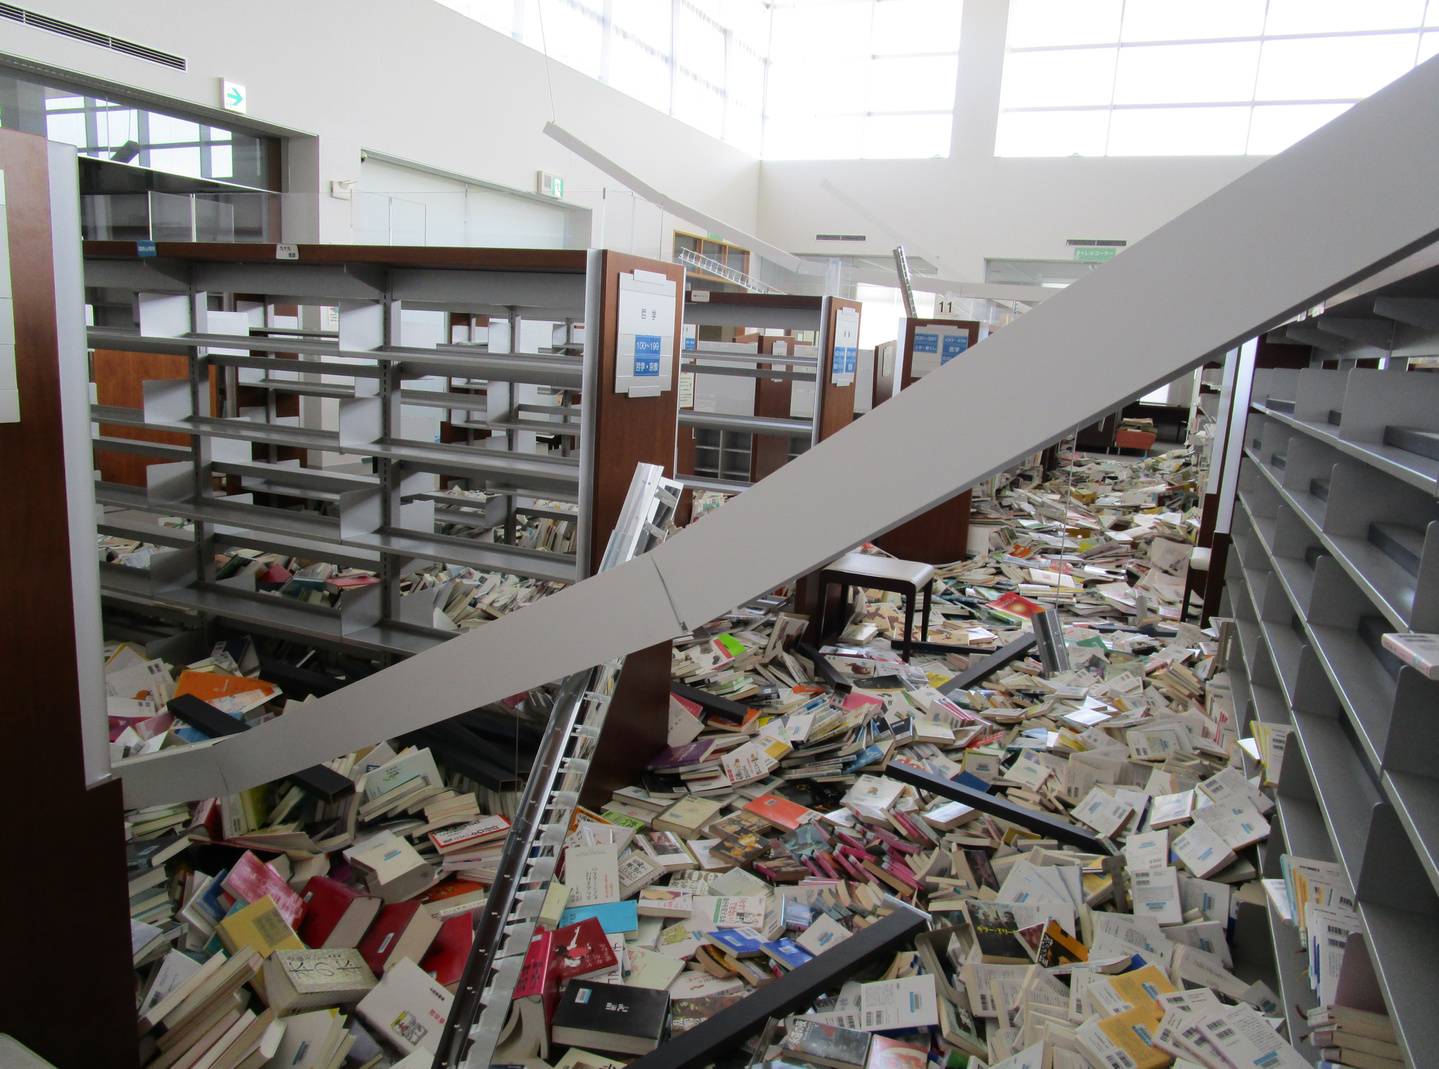 益城町図書館地震被害